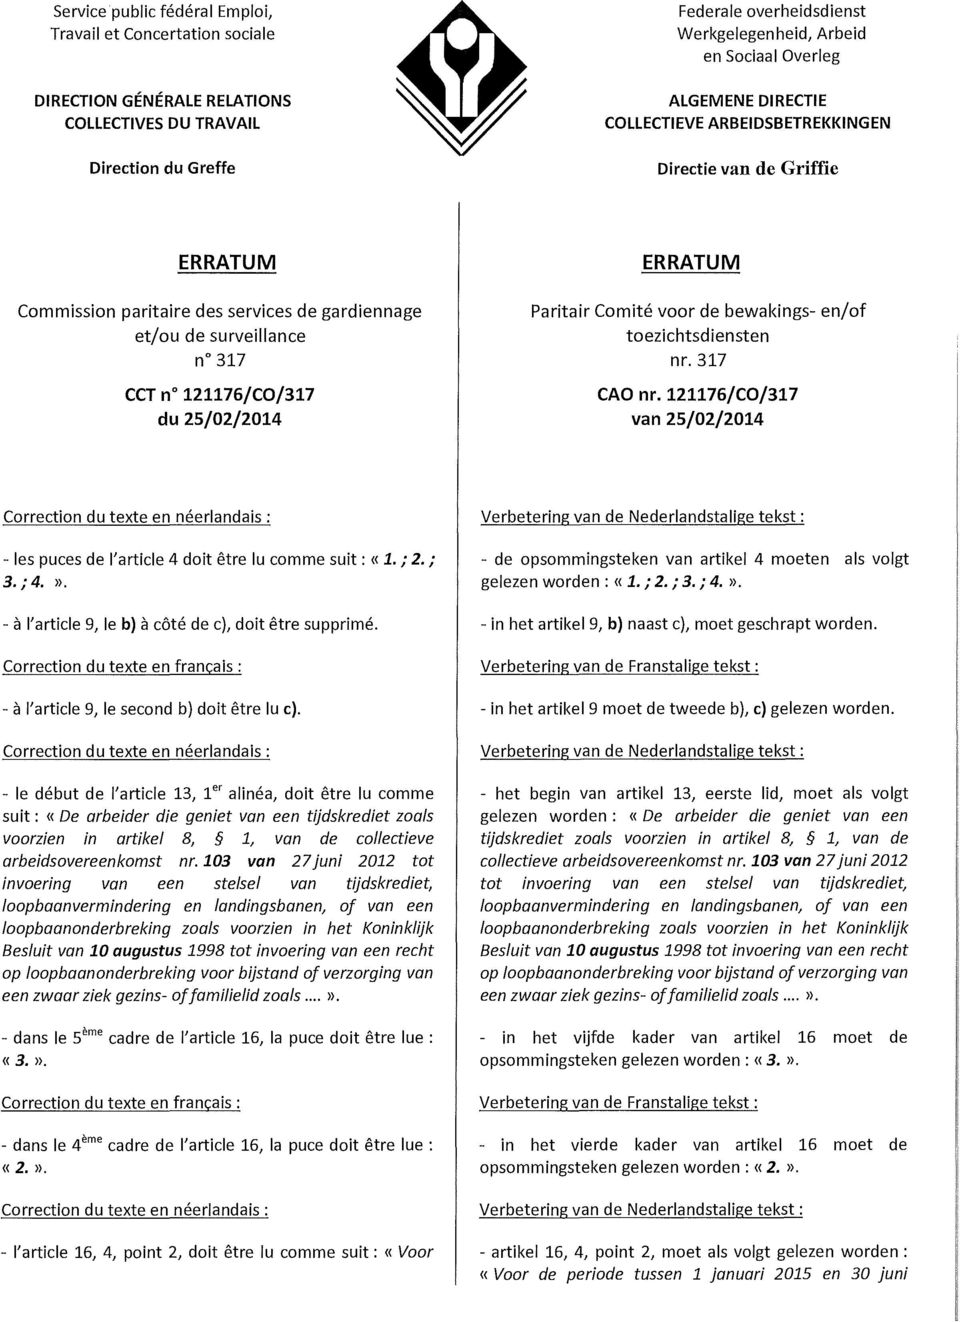 25/02/2014 Paritair Comité voor de bewakings- en/of toezichtsdiensten nr.317 CAOnr.